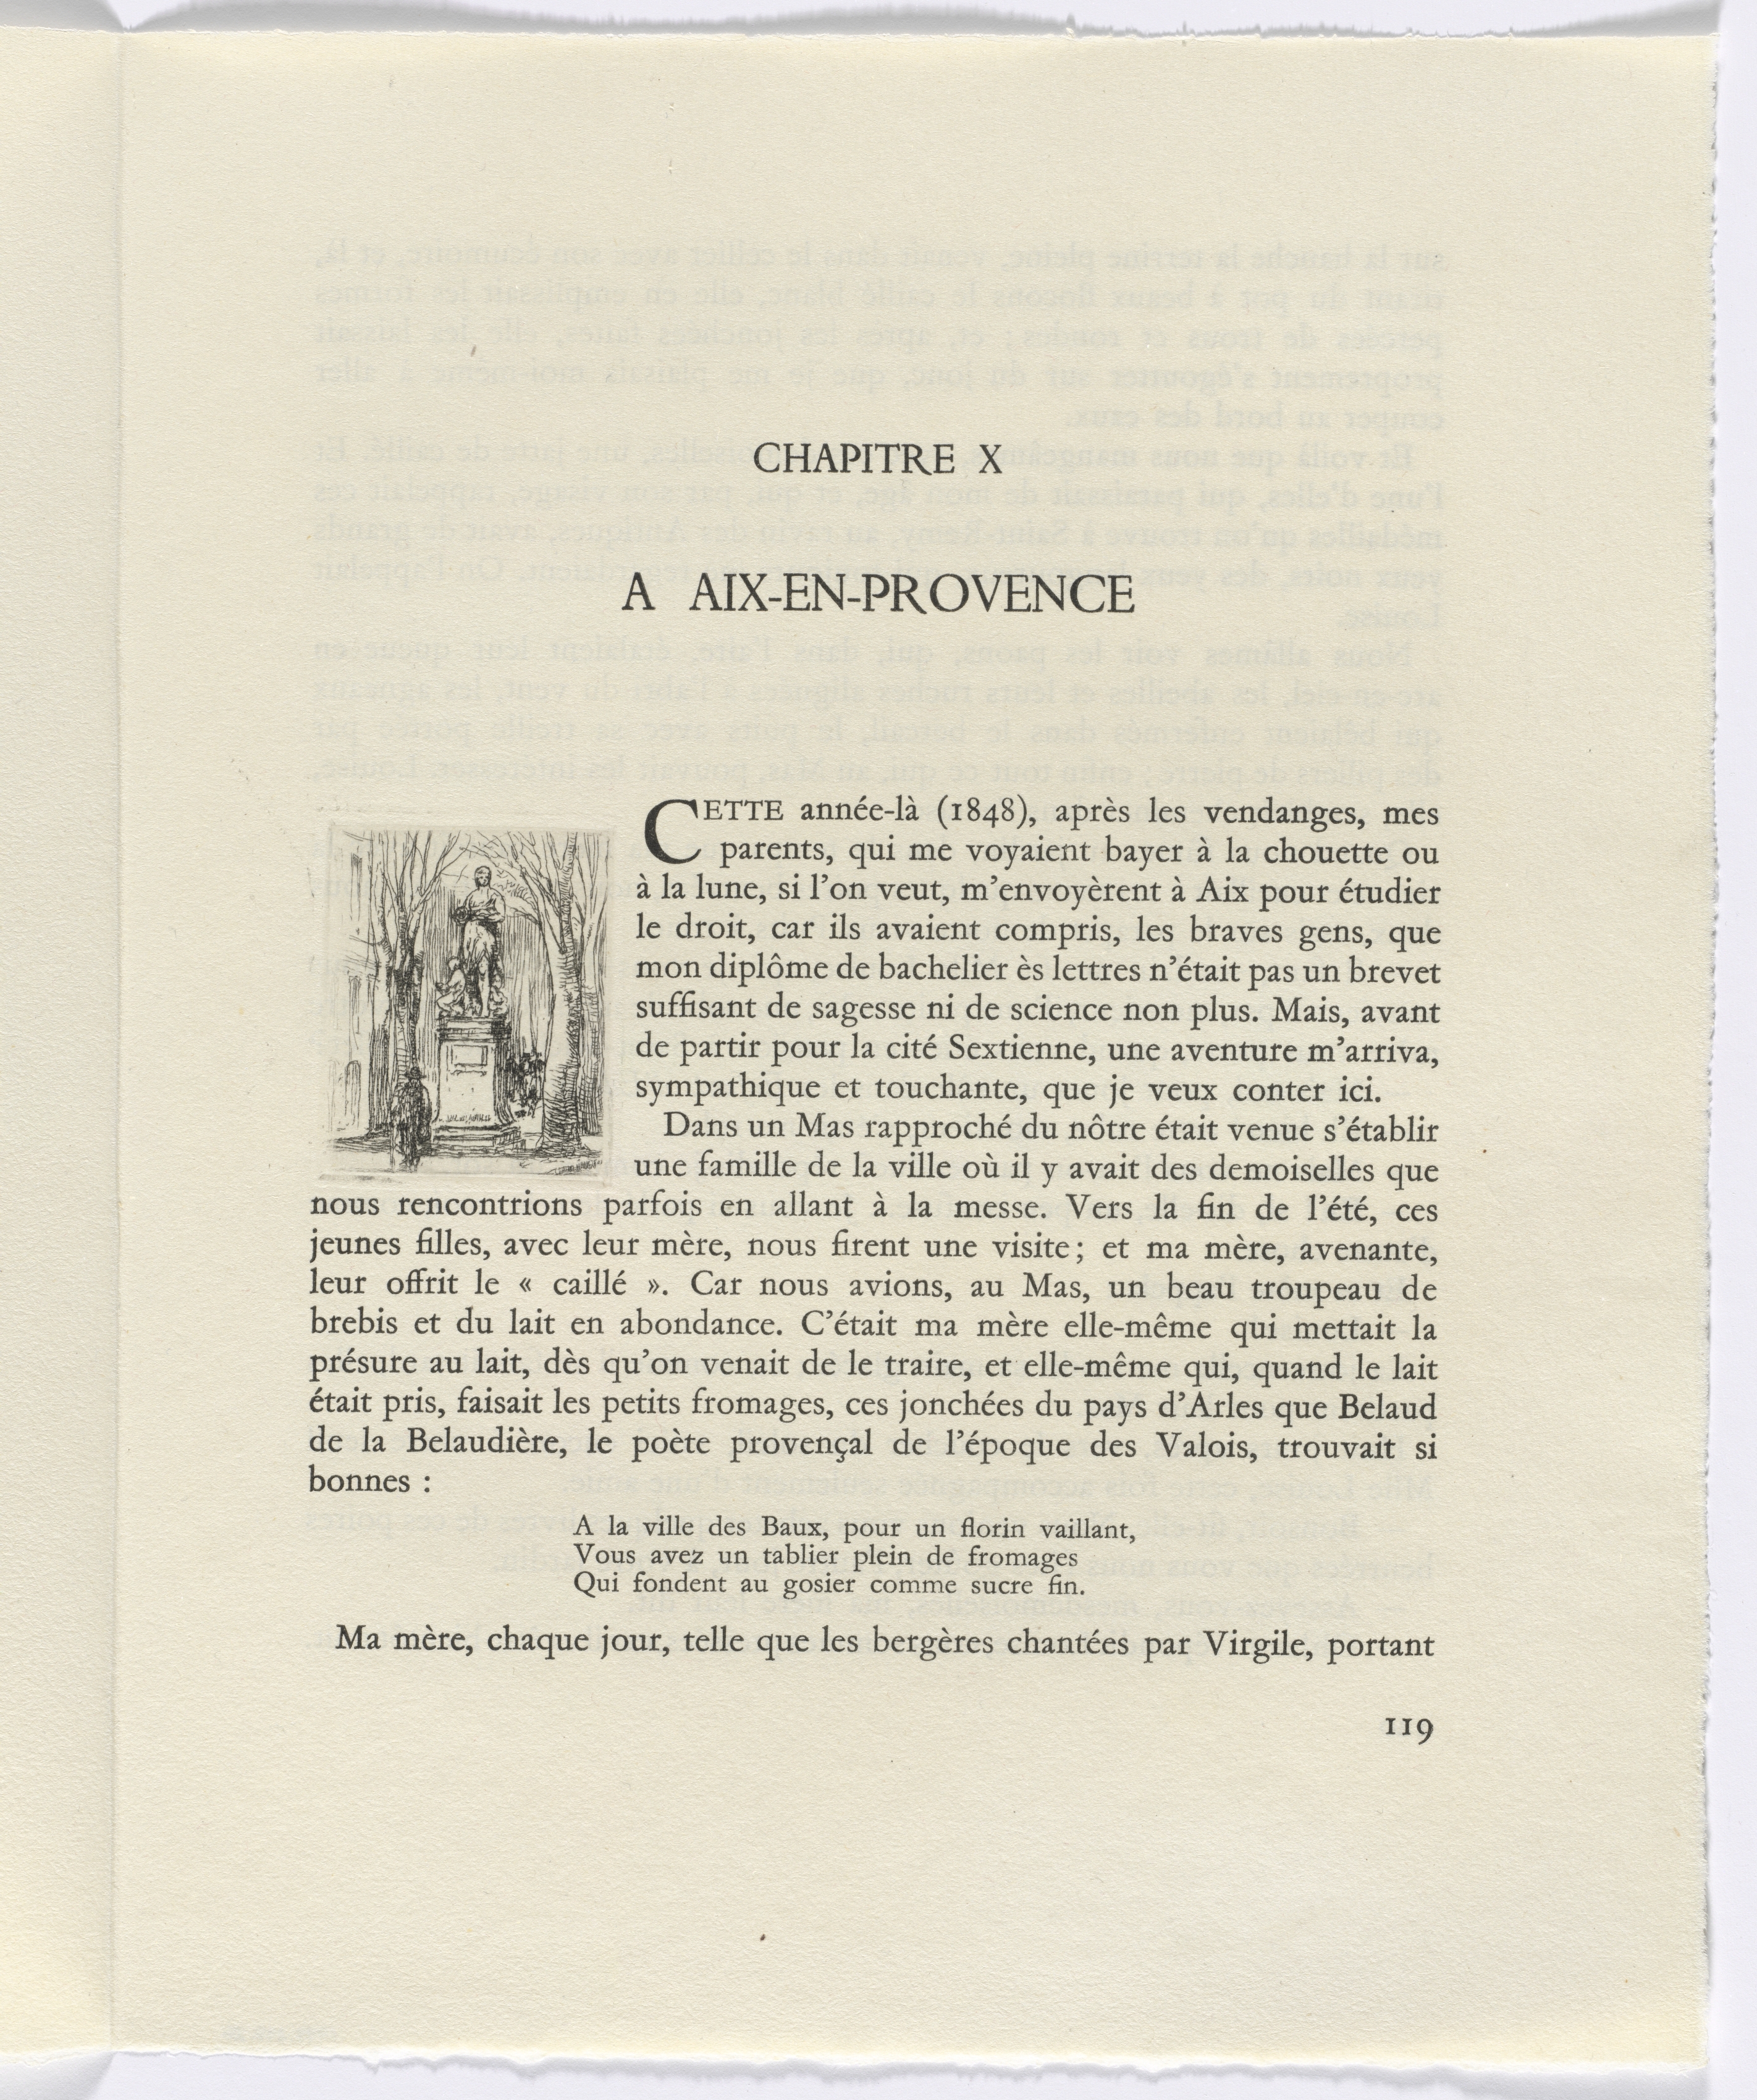 Frédéric Mistral: Mémoires et Recits by Frédéric Mistral: monument (page 119)